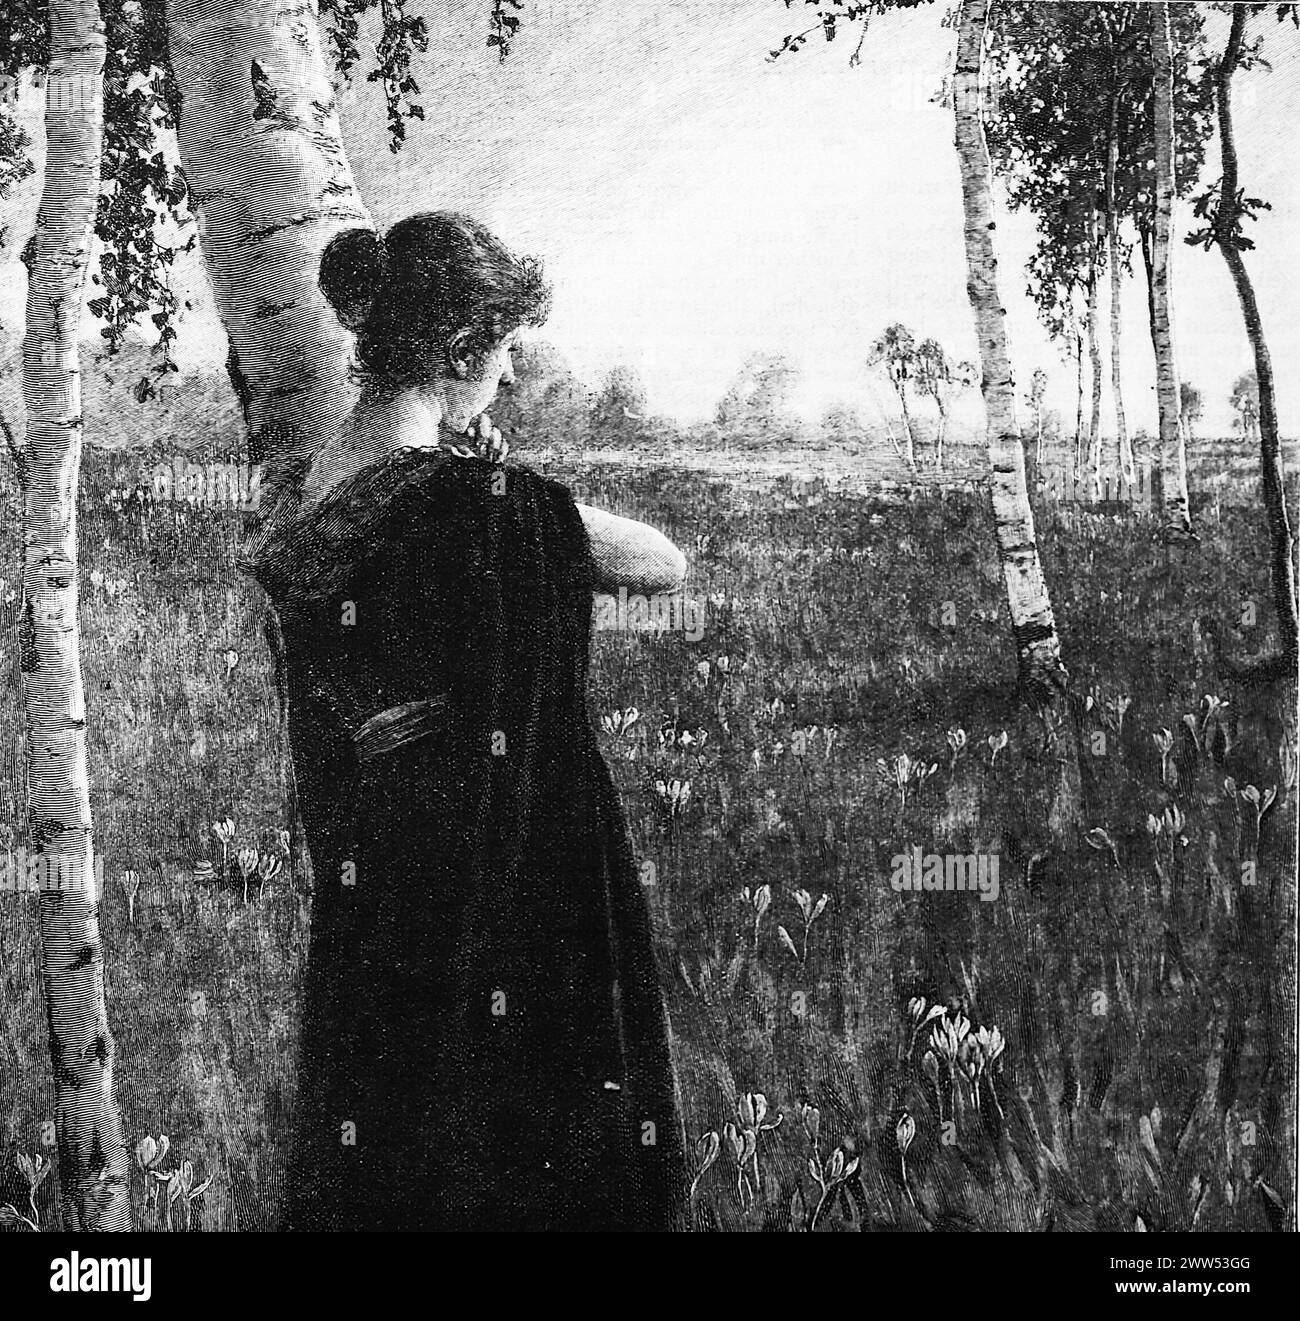 Solitudine, una signora in piedi in un legno, sola, dipinto non attribuito da una foto di Photographic Union, Monaco. Bianco e nero. Fotografia tratta da una rivista originariamente pubblicata nel 1899. Foto Stock